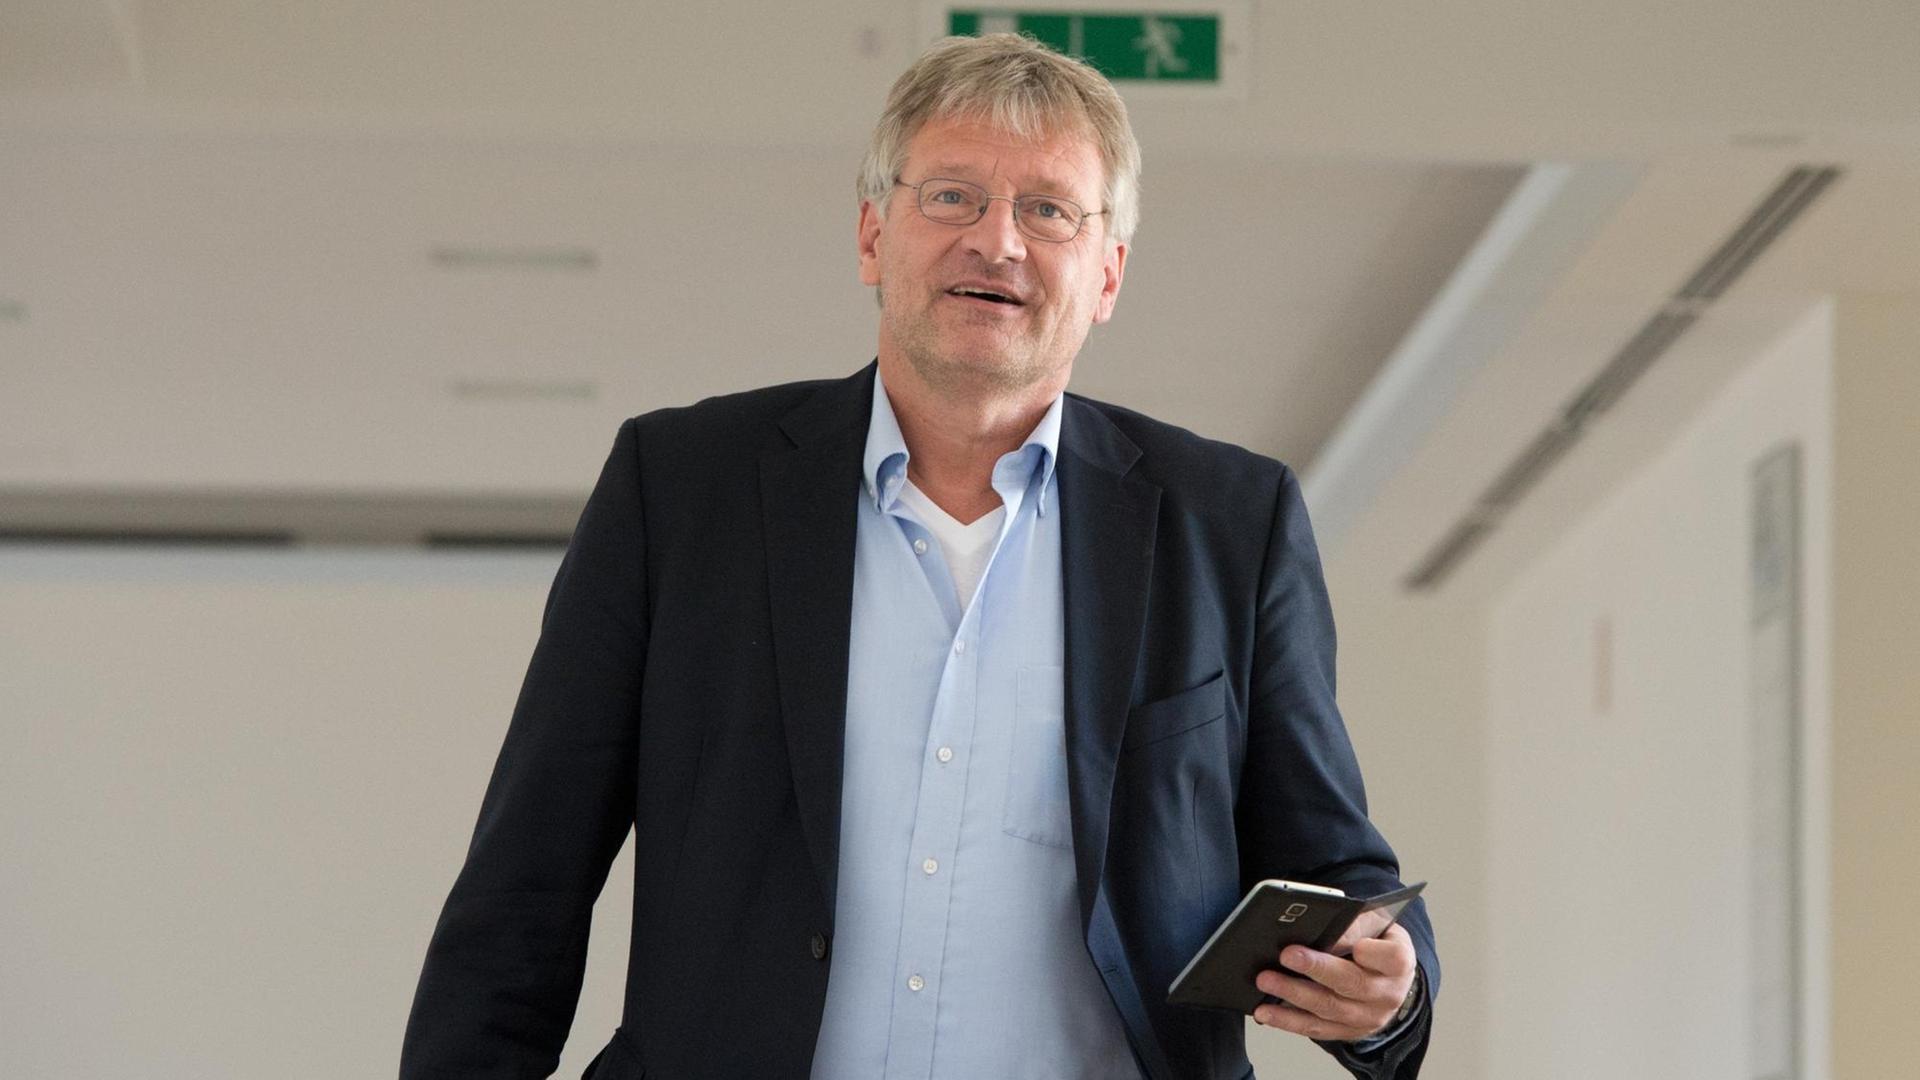 Jörg Meuthen, der Bundesvorsitzende der Partei Alternative für Deutschland (AfD), geht am 06.07.2016 in Stuttgart (Baden-Württemberg) in einem Landtagsgebäude zu einer Besprechung.